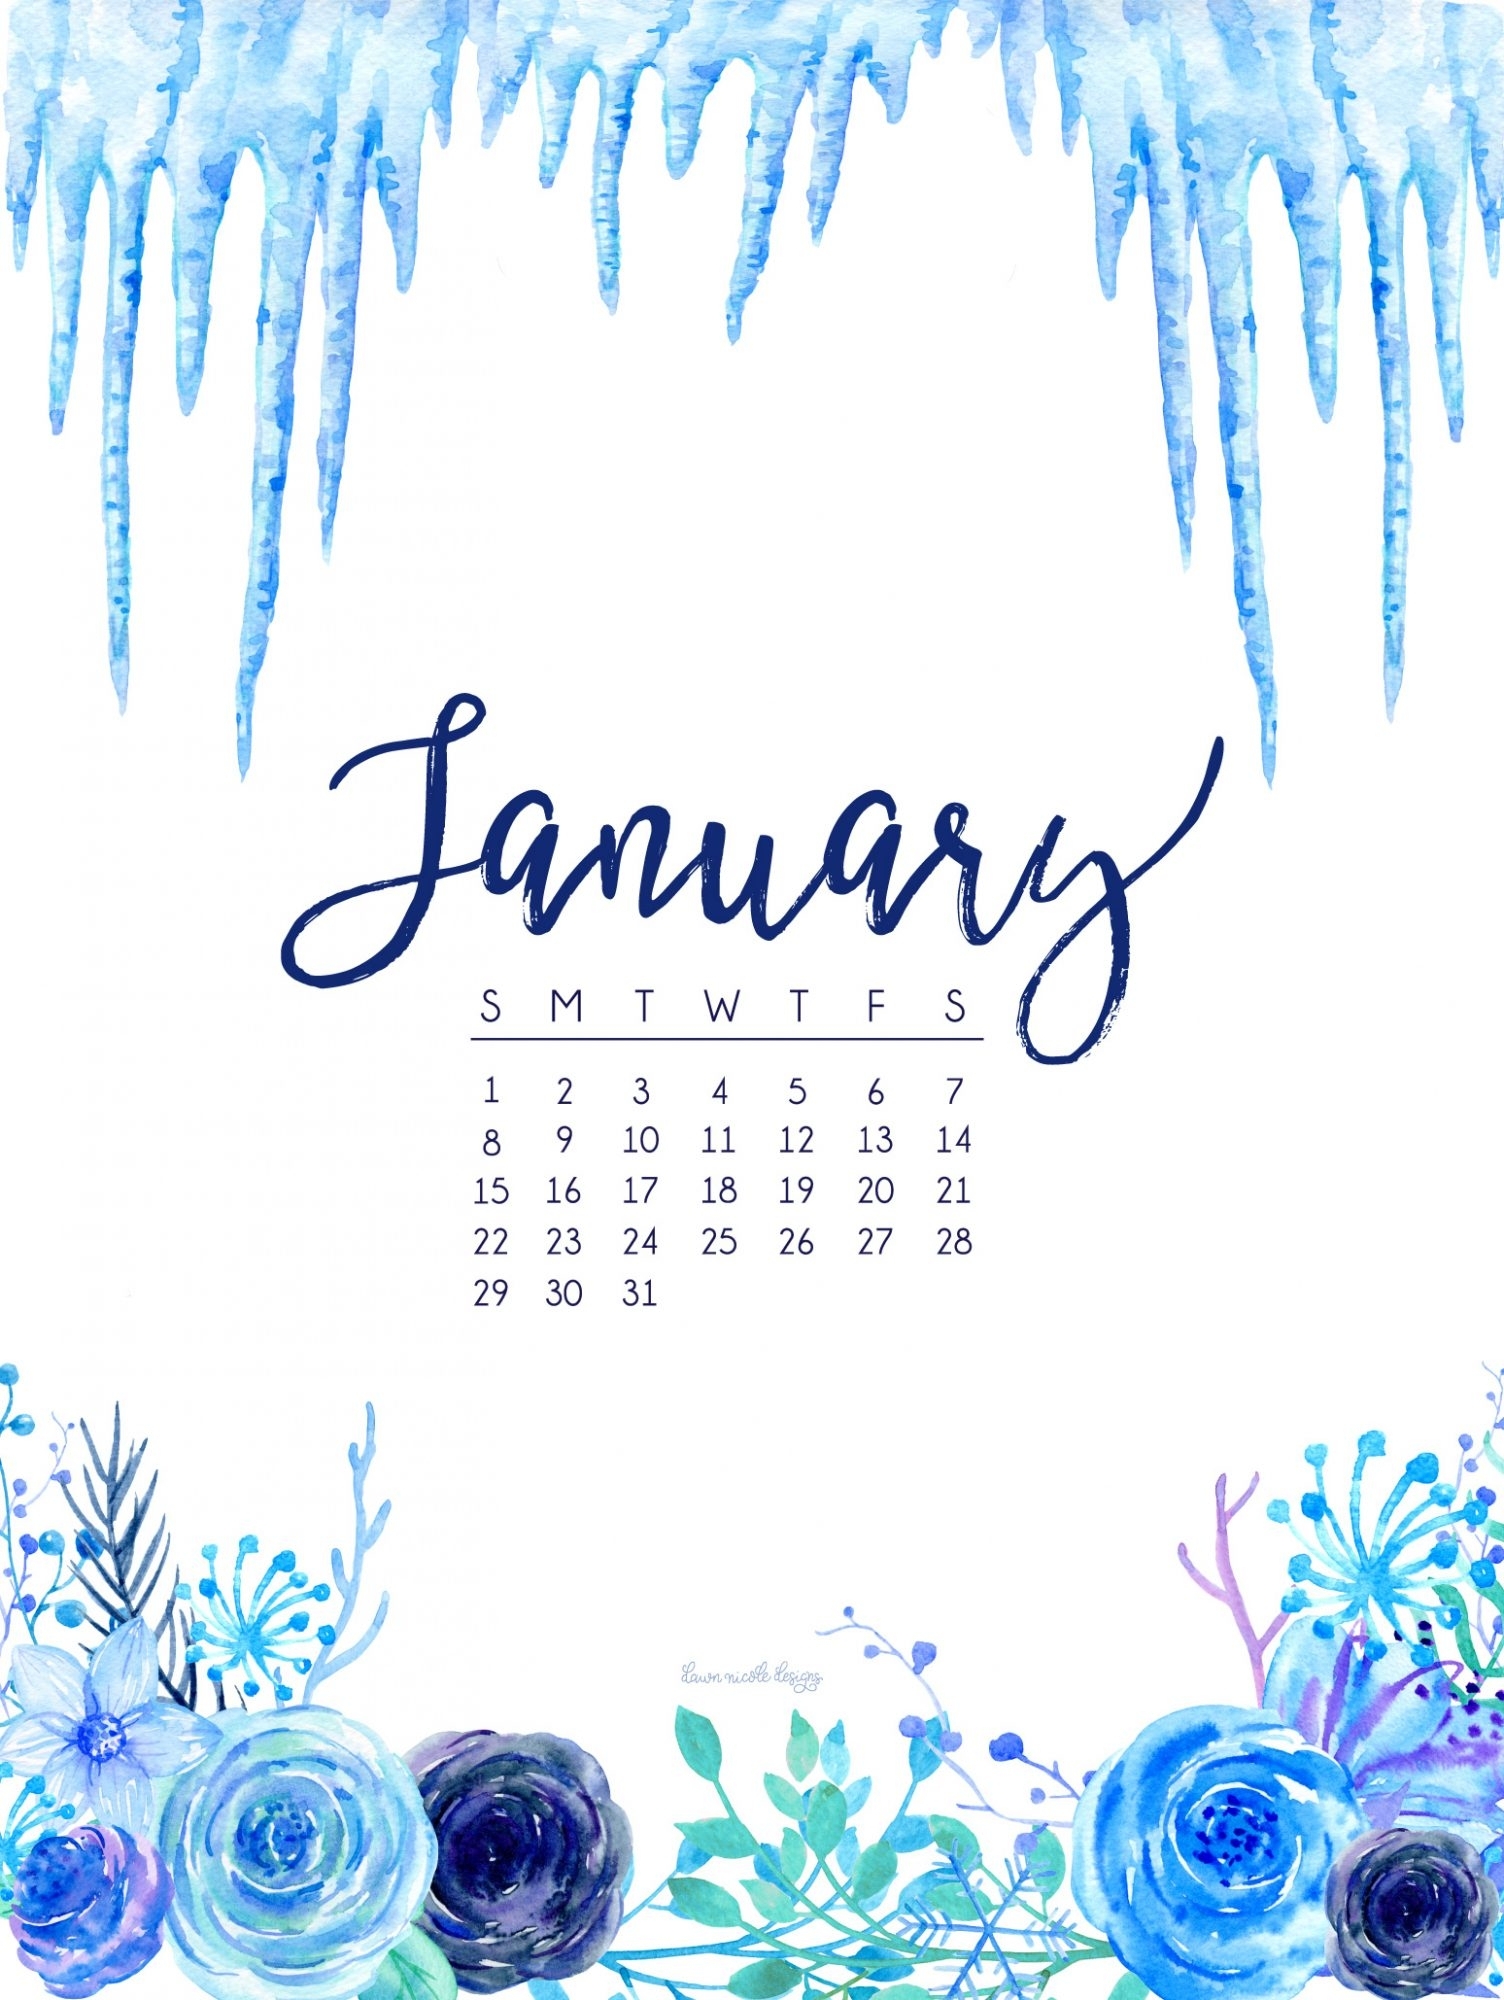 10 New January 2017 Calendar Wallpaper FULL HD 1080p For PC Desktop